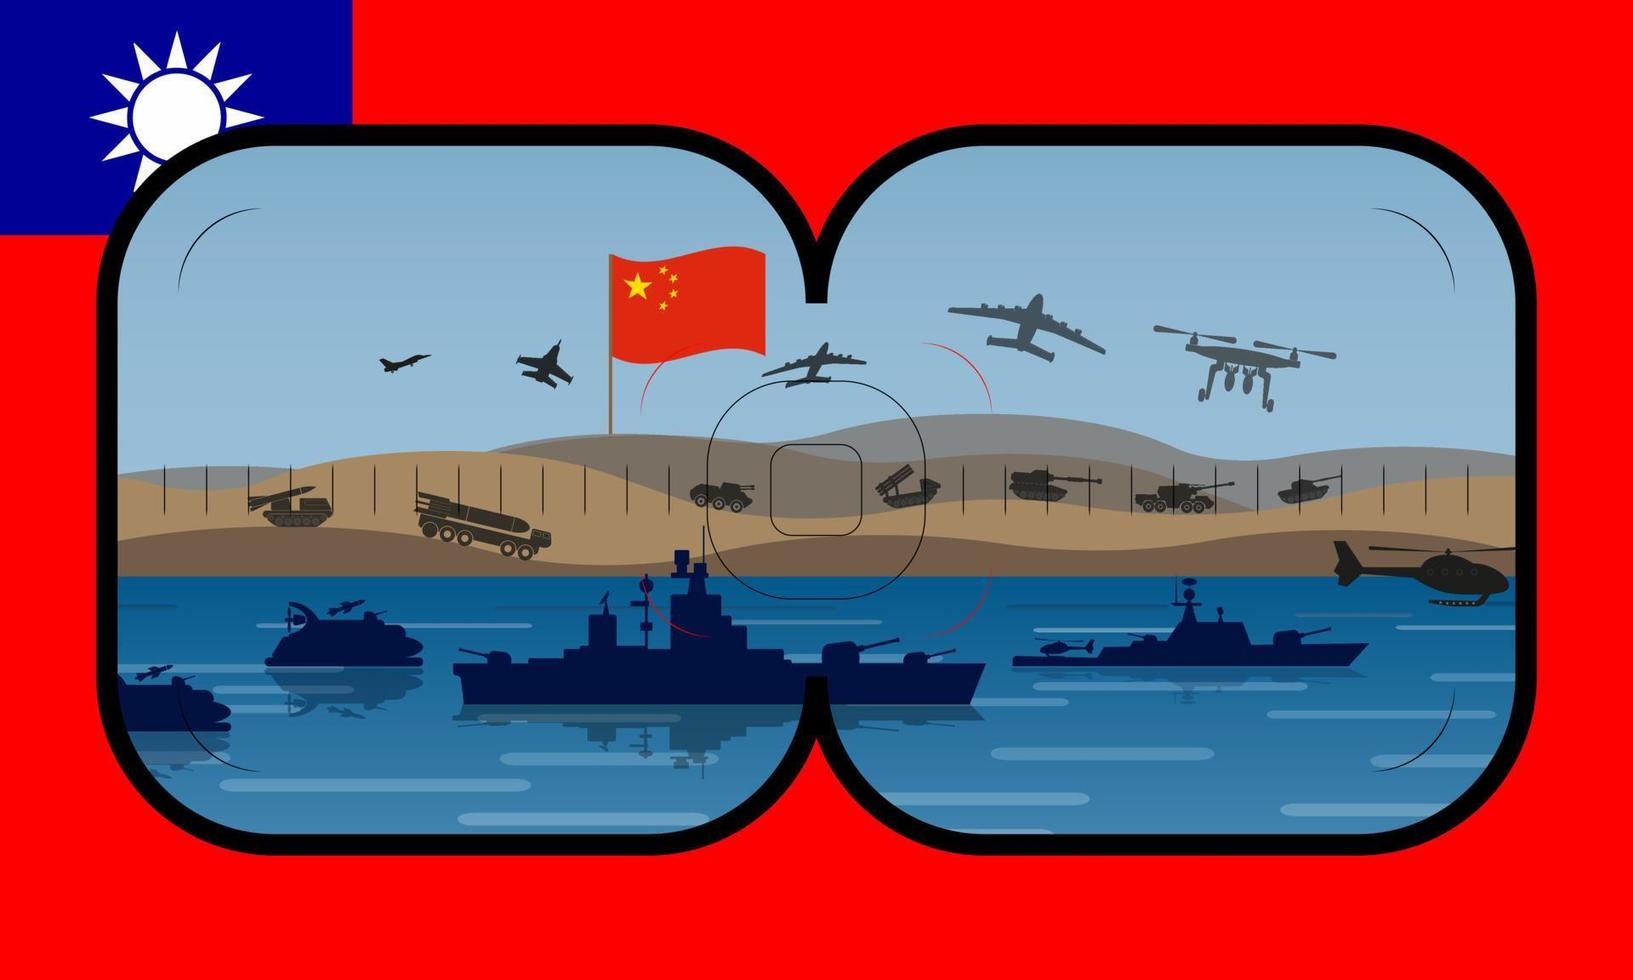 ilustração em vetor de exercícios chineses ao largo da costa de taiwan, no mar do sul da china. vista do periscópio com a bandeira de taiwan ao fundo.